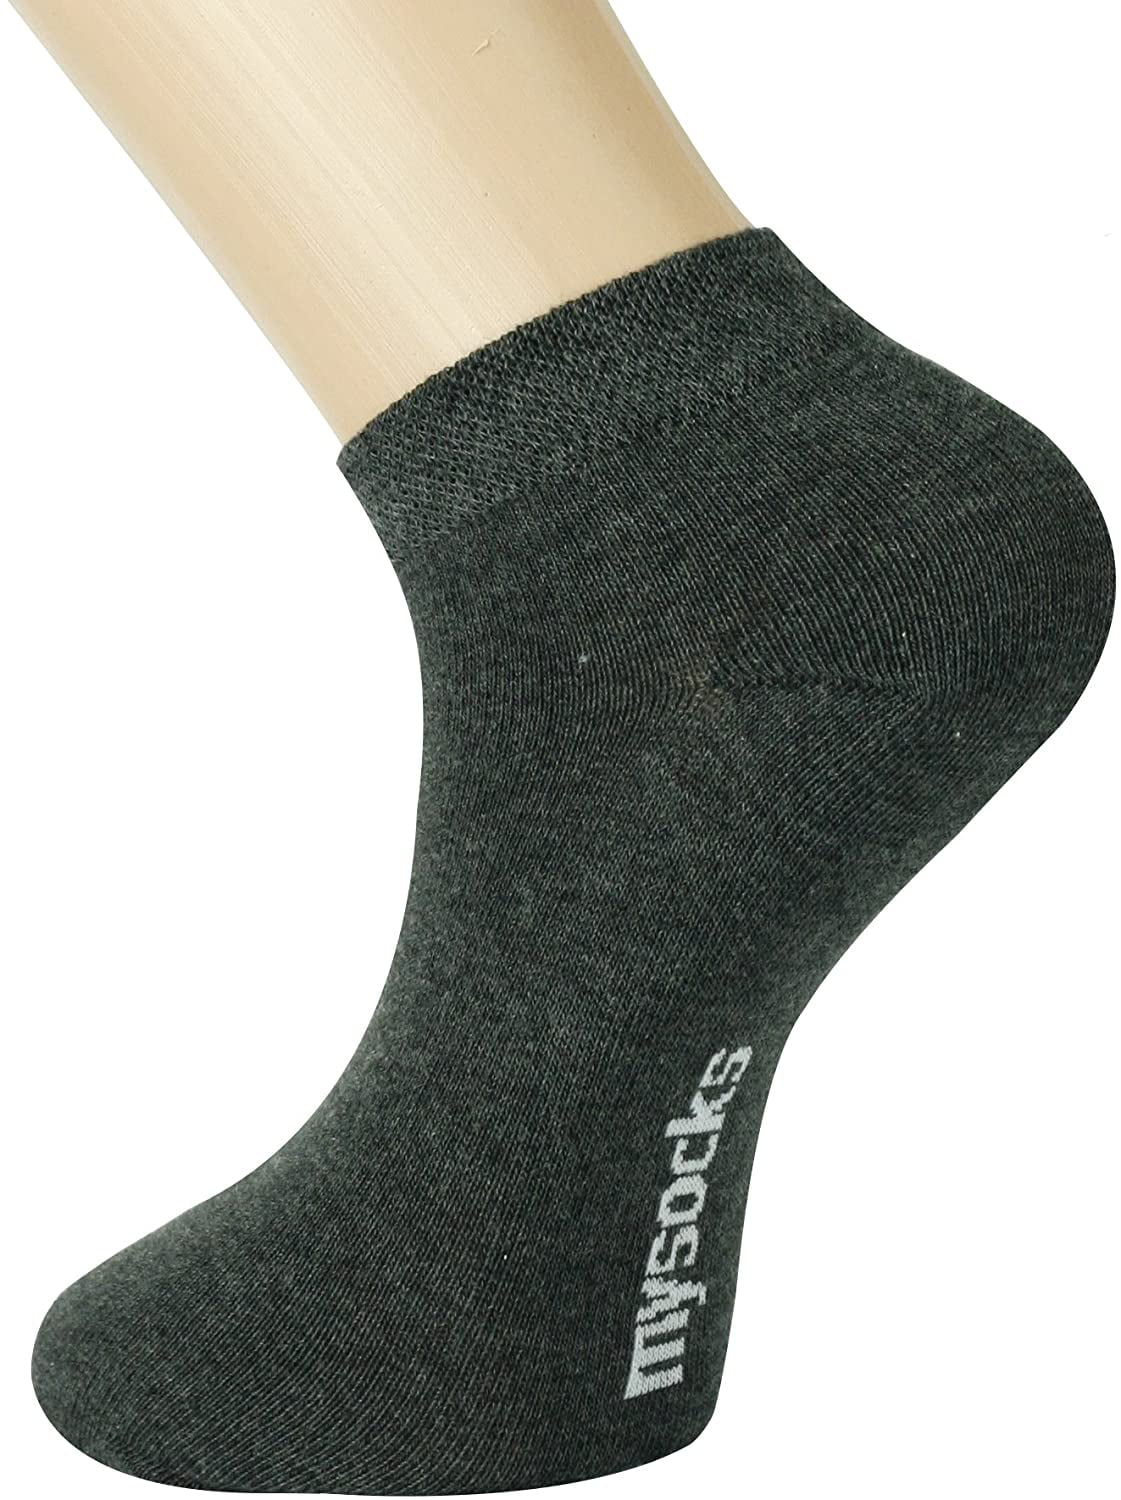 Mysocks Unisex Trainer Socks Cotton Seamless Toe